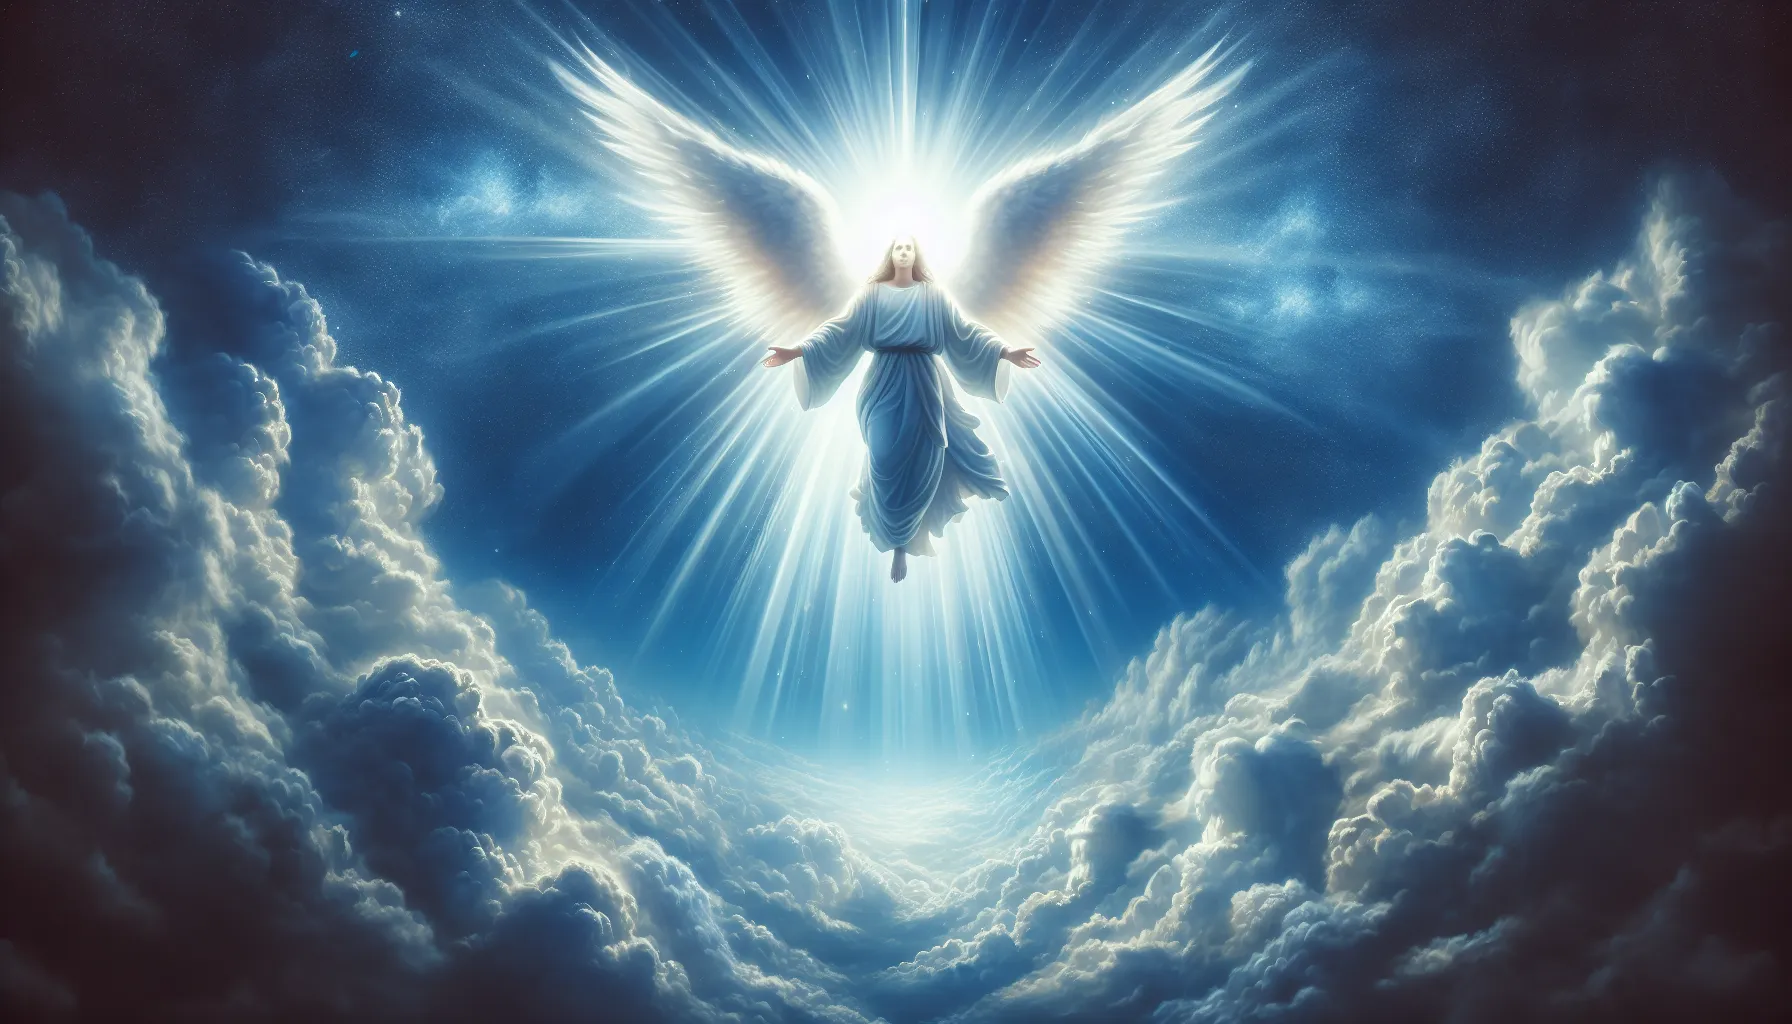 Representación artística de Dios según la descripción bíblica: un rayo de luz divina rodeado de nubes blancas en un cielo azul.